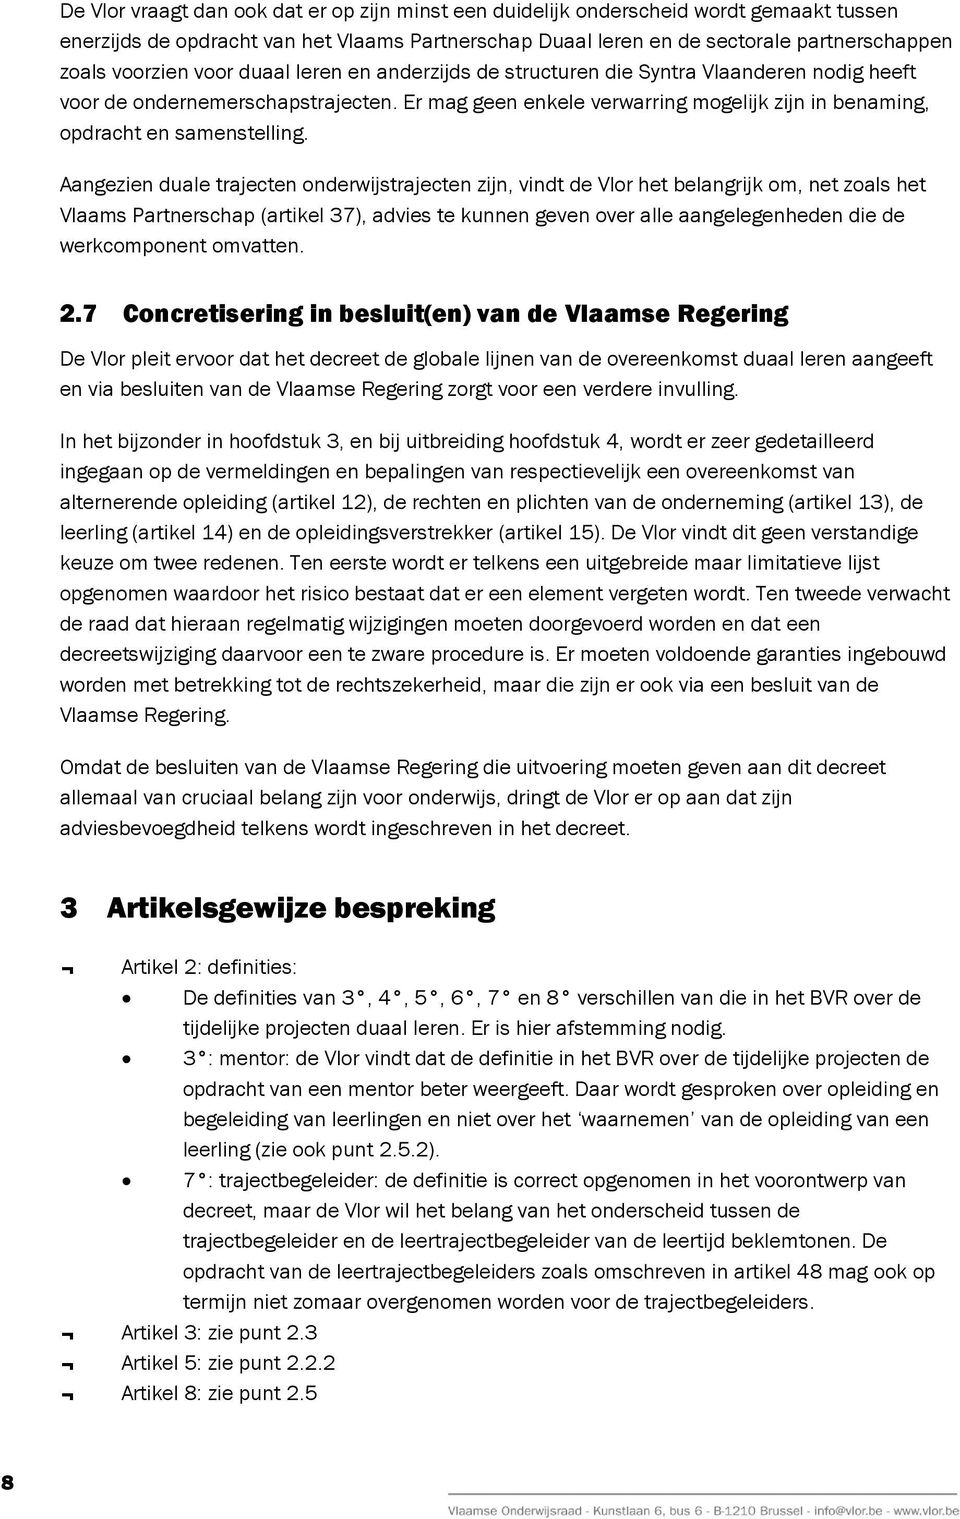 Aangezien duale trajecten onderwijstrajecten zijn, vindt de Vlor het belangrijk om, net zoals het Vlaams Partnerschap (artikel 37), advies te kunnen geven over alle aangelegenheden die de